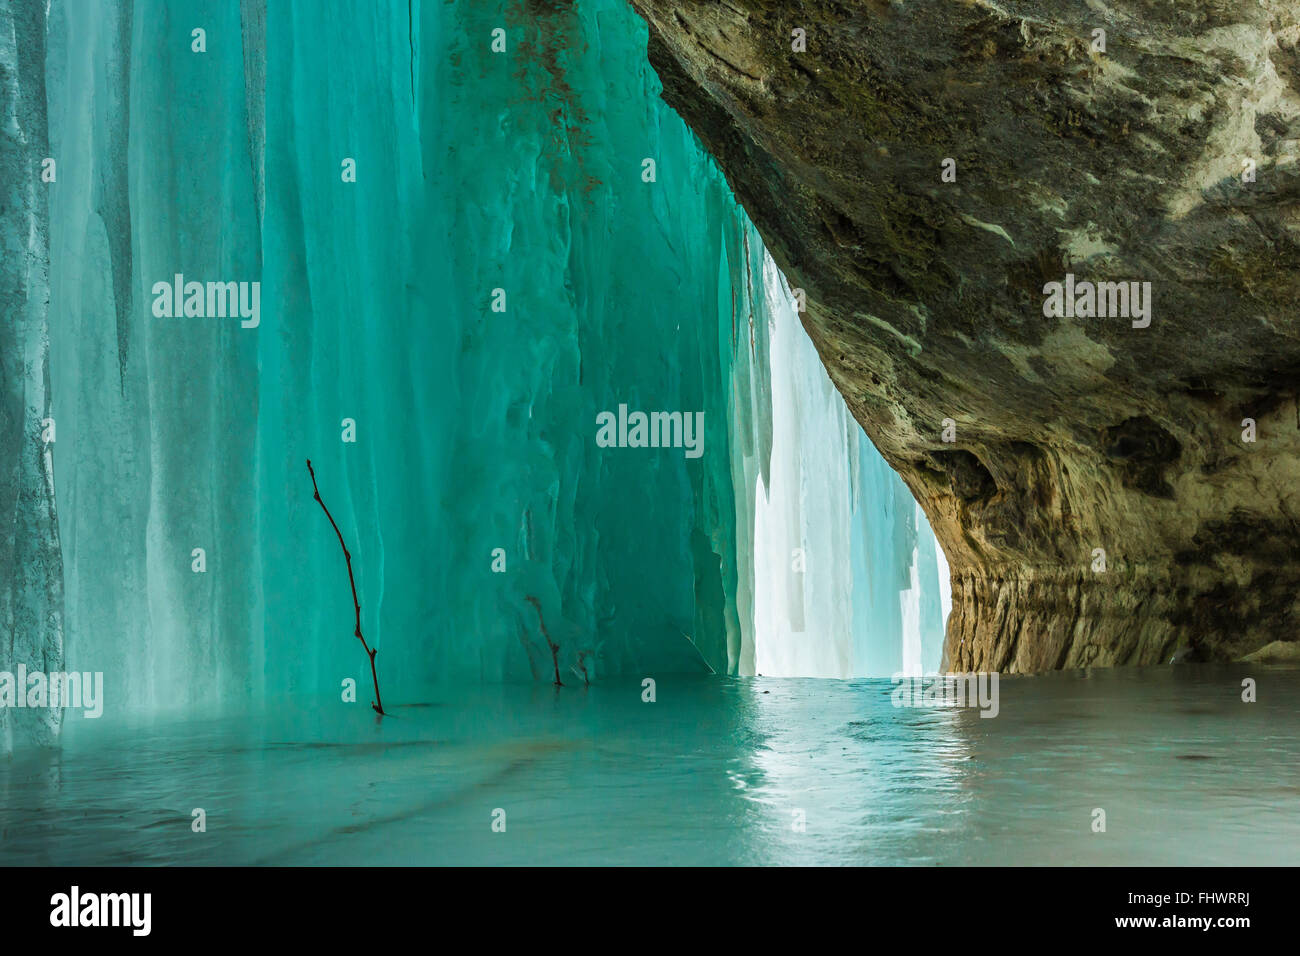 Hielo translúcido retroiluminado en las cortinas, la formación de hielo en el Lago nacional Pictured Rocks, en la Península Superior, Michigan, EE.UU. Foto de stock